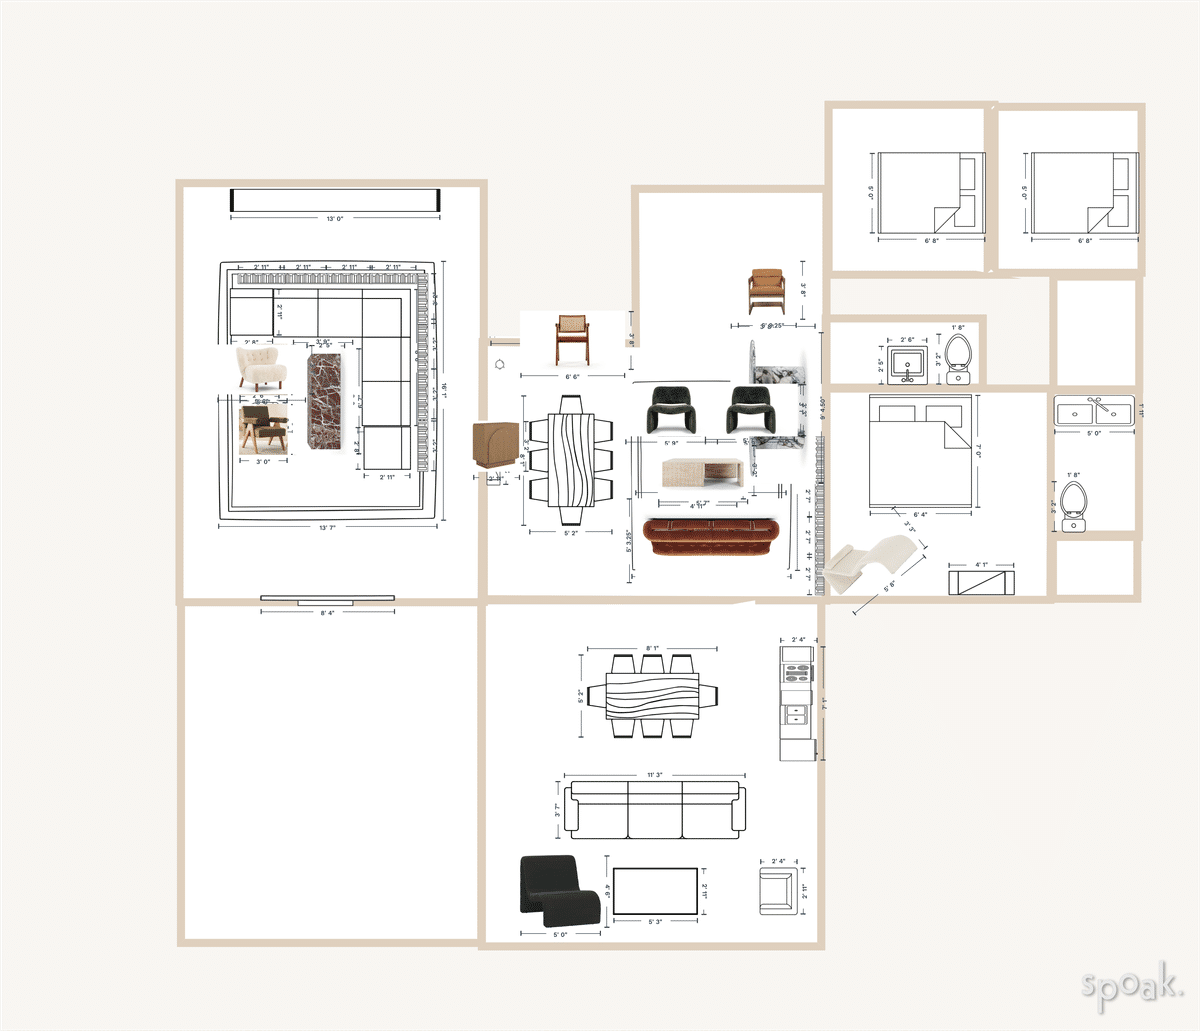 Dining Room Floor Plan designed by Marina Kaya